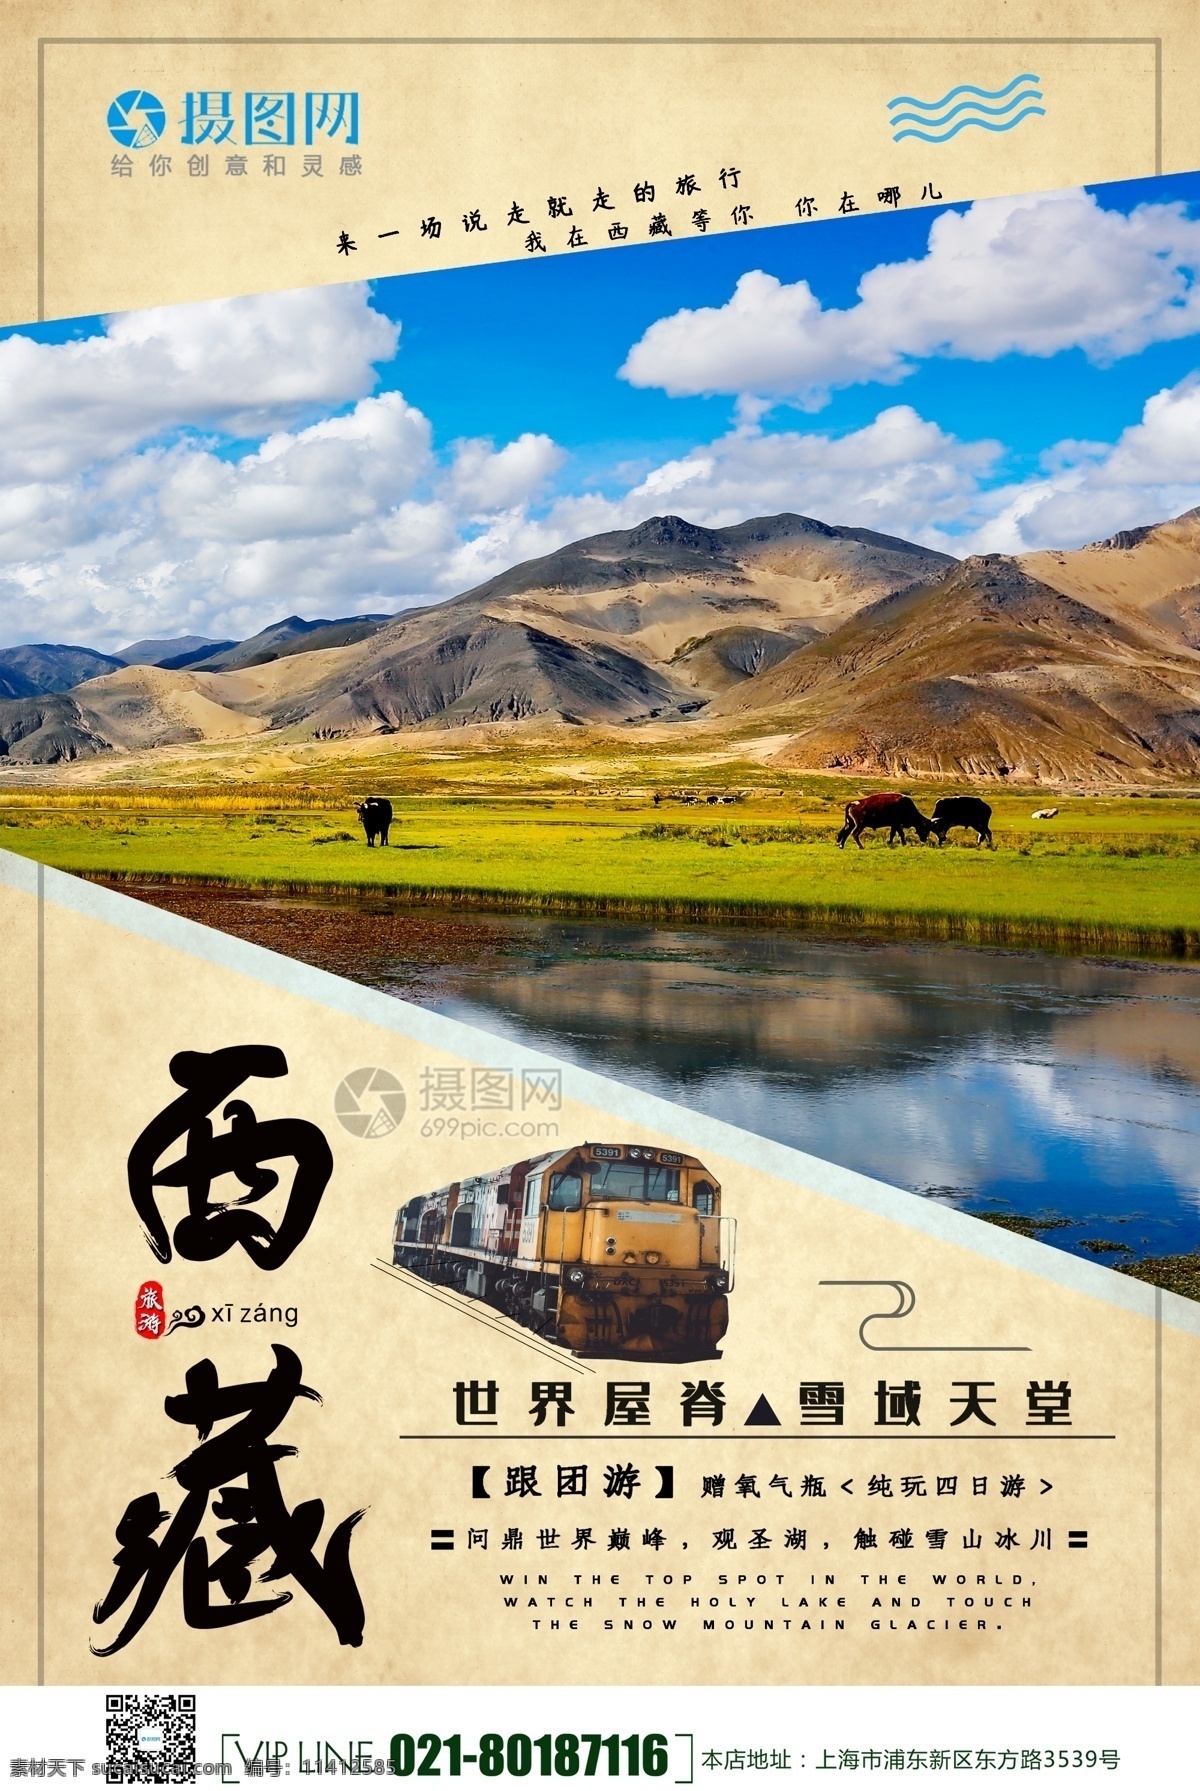 西藏旅游 优惠 宣传海报 西藏 旅游 旅行 海报 旅游海报 宣传 旅途 著名景点 景区 国内游 旅行社 旅行团 跟团游